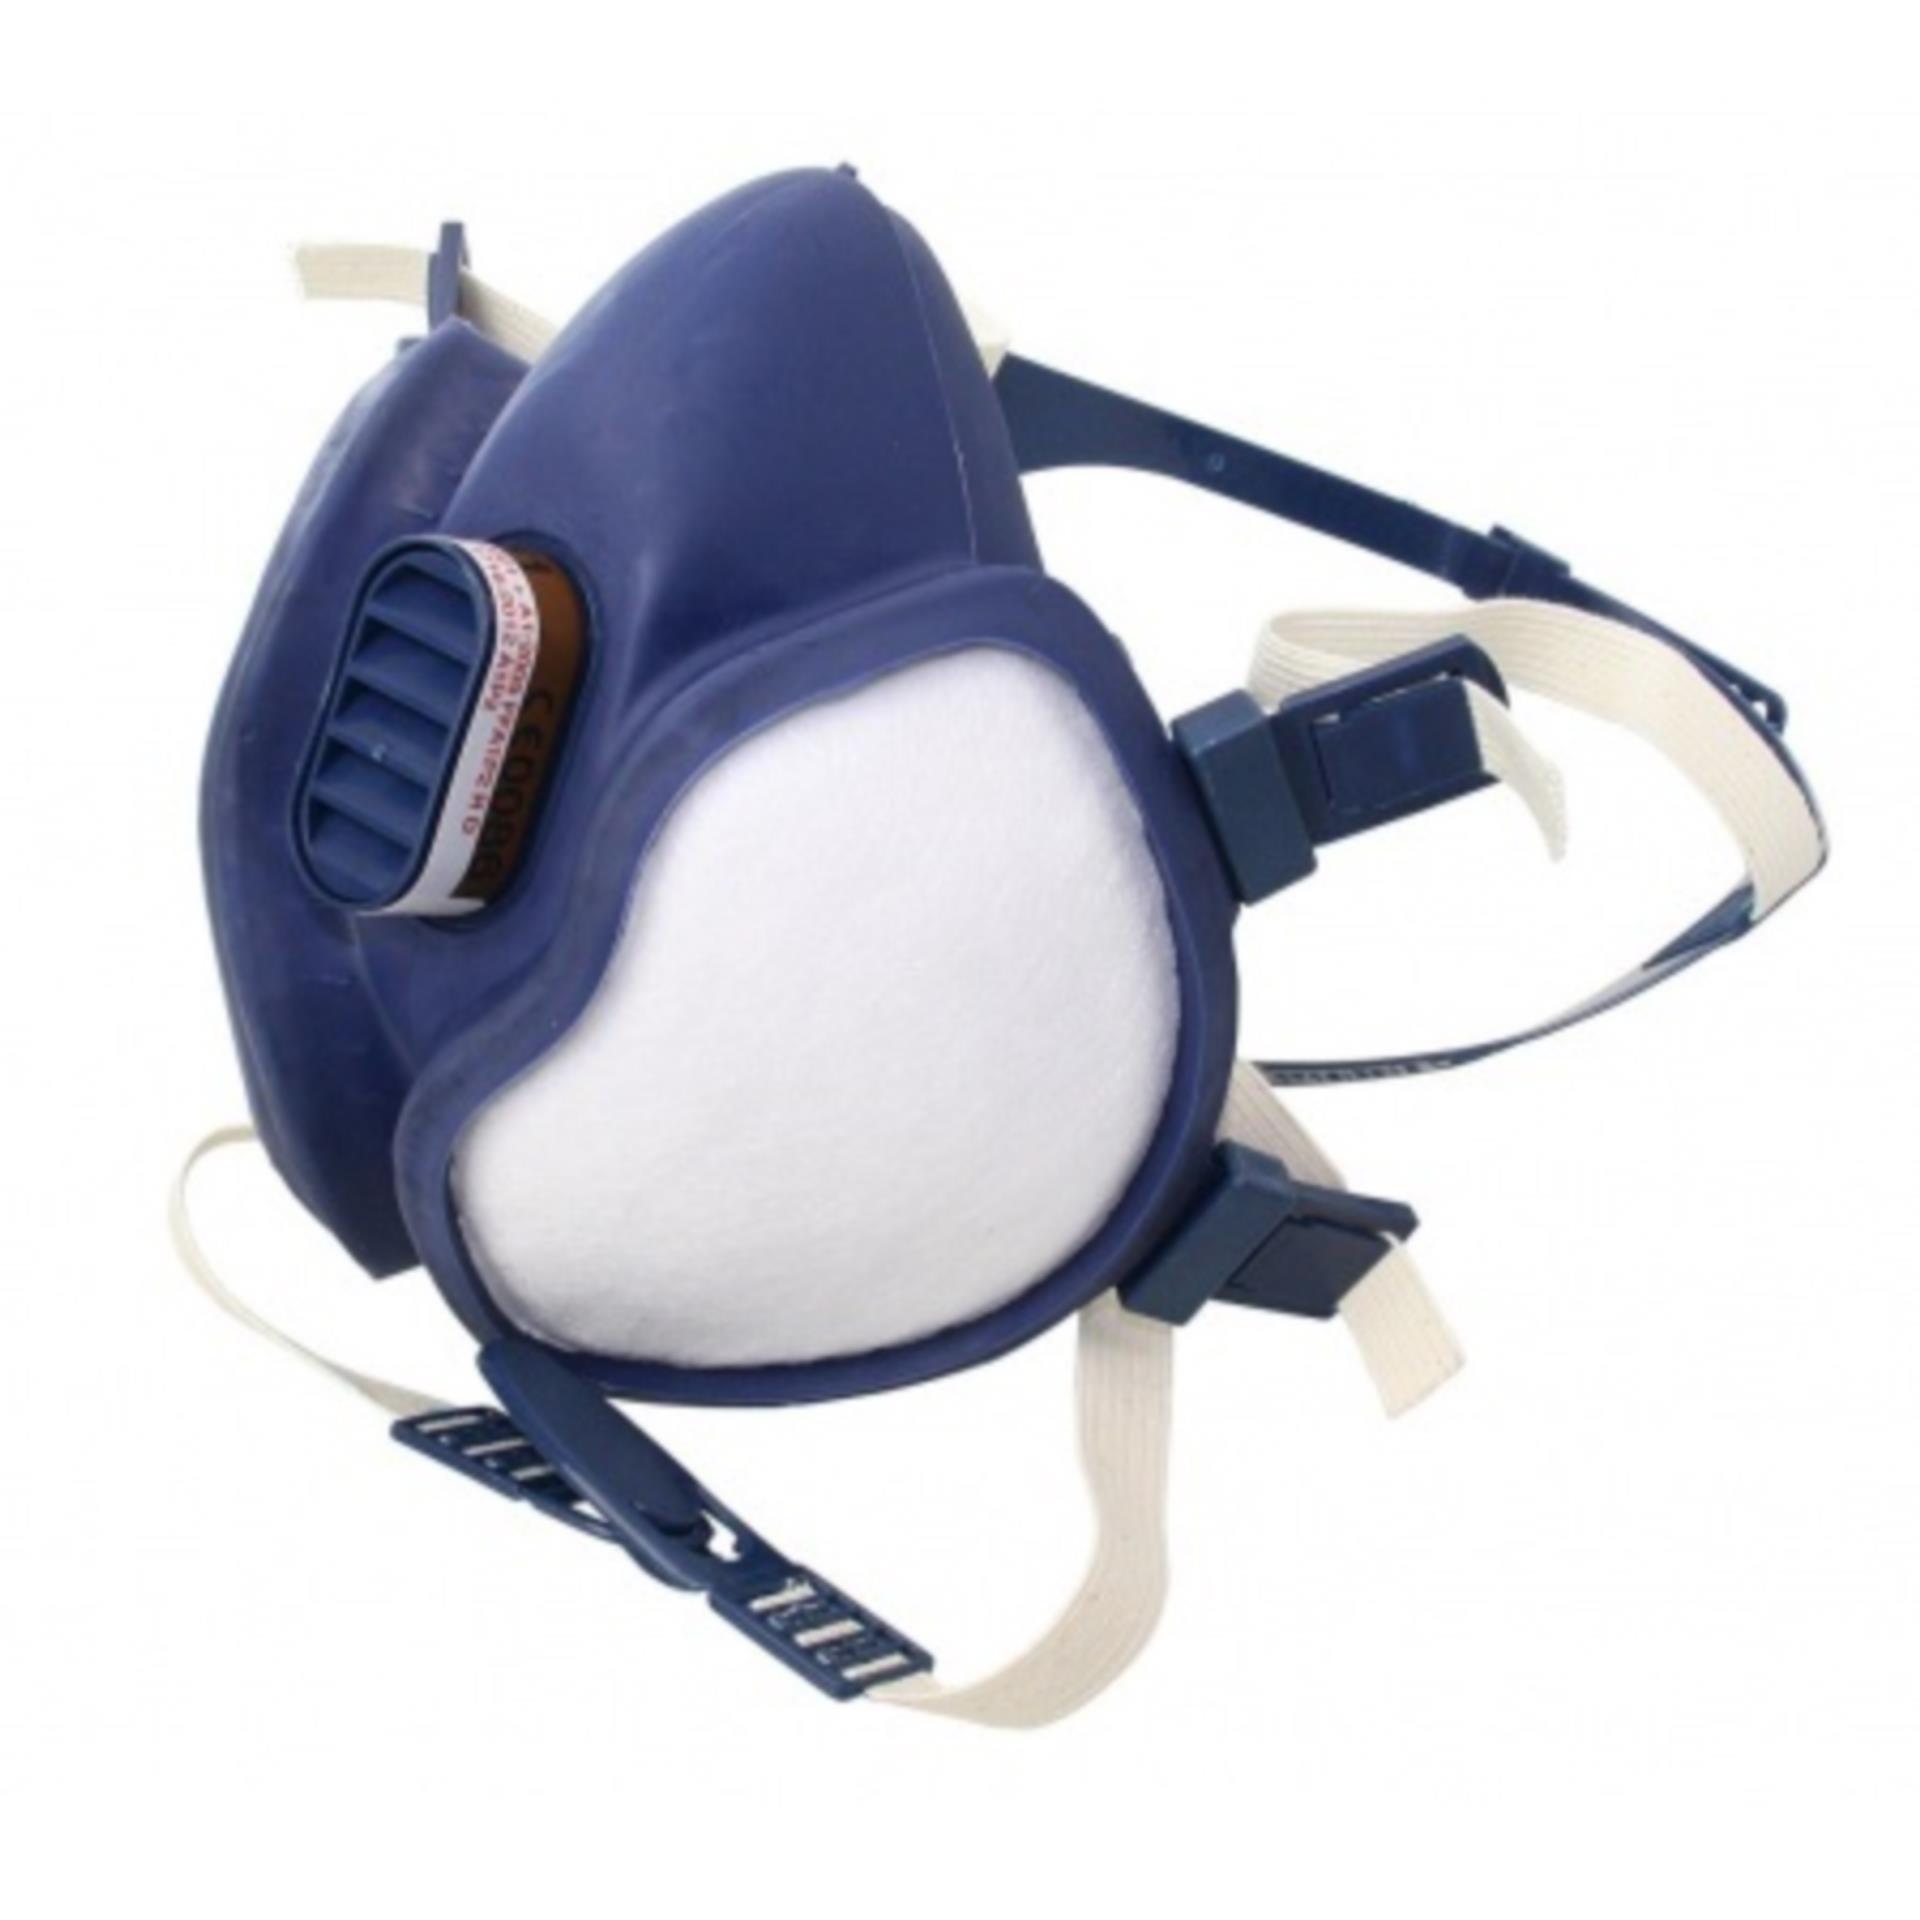 3M Atemschutz Maske, Gasfiltrierend